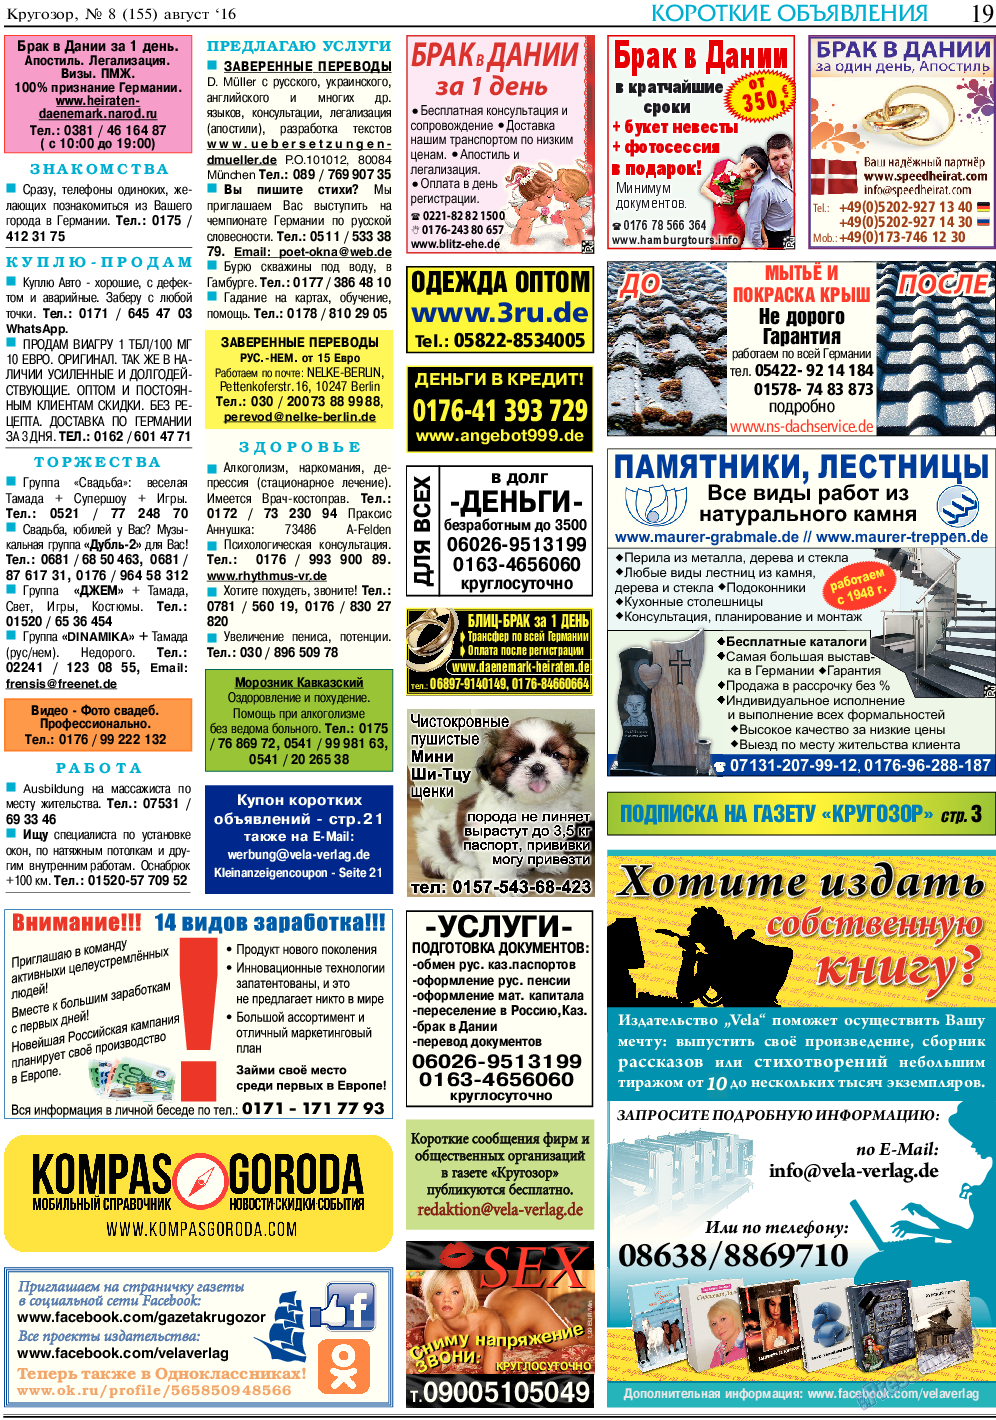 Кругозор, газета. 2016 №8 стр.19